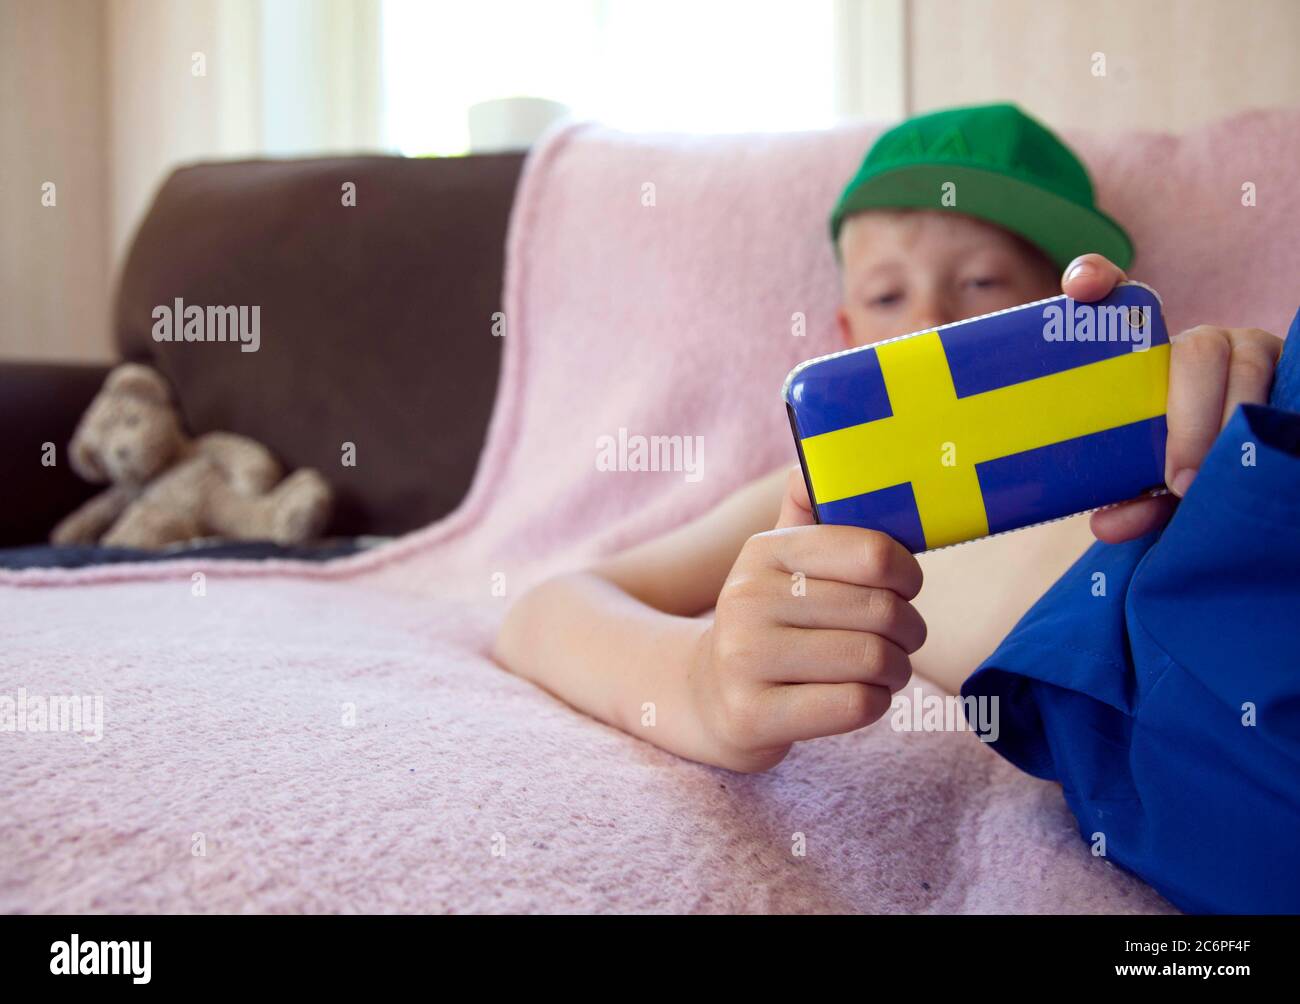 Ein kleiner Kerl, der mit seinem Handy im Internet surft, mit einer Handyhülle in Form der schwedischen Flagge. Foto Jeppe Gustafsson Stockfoto